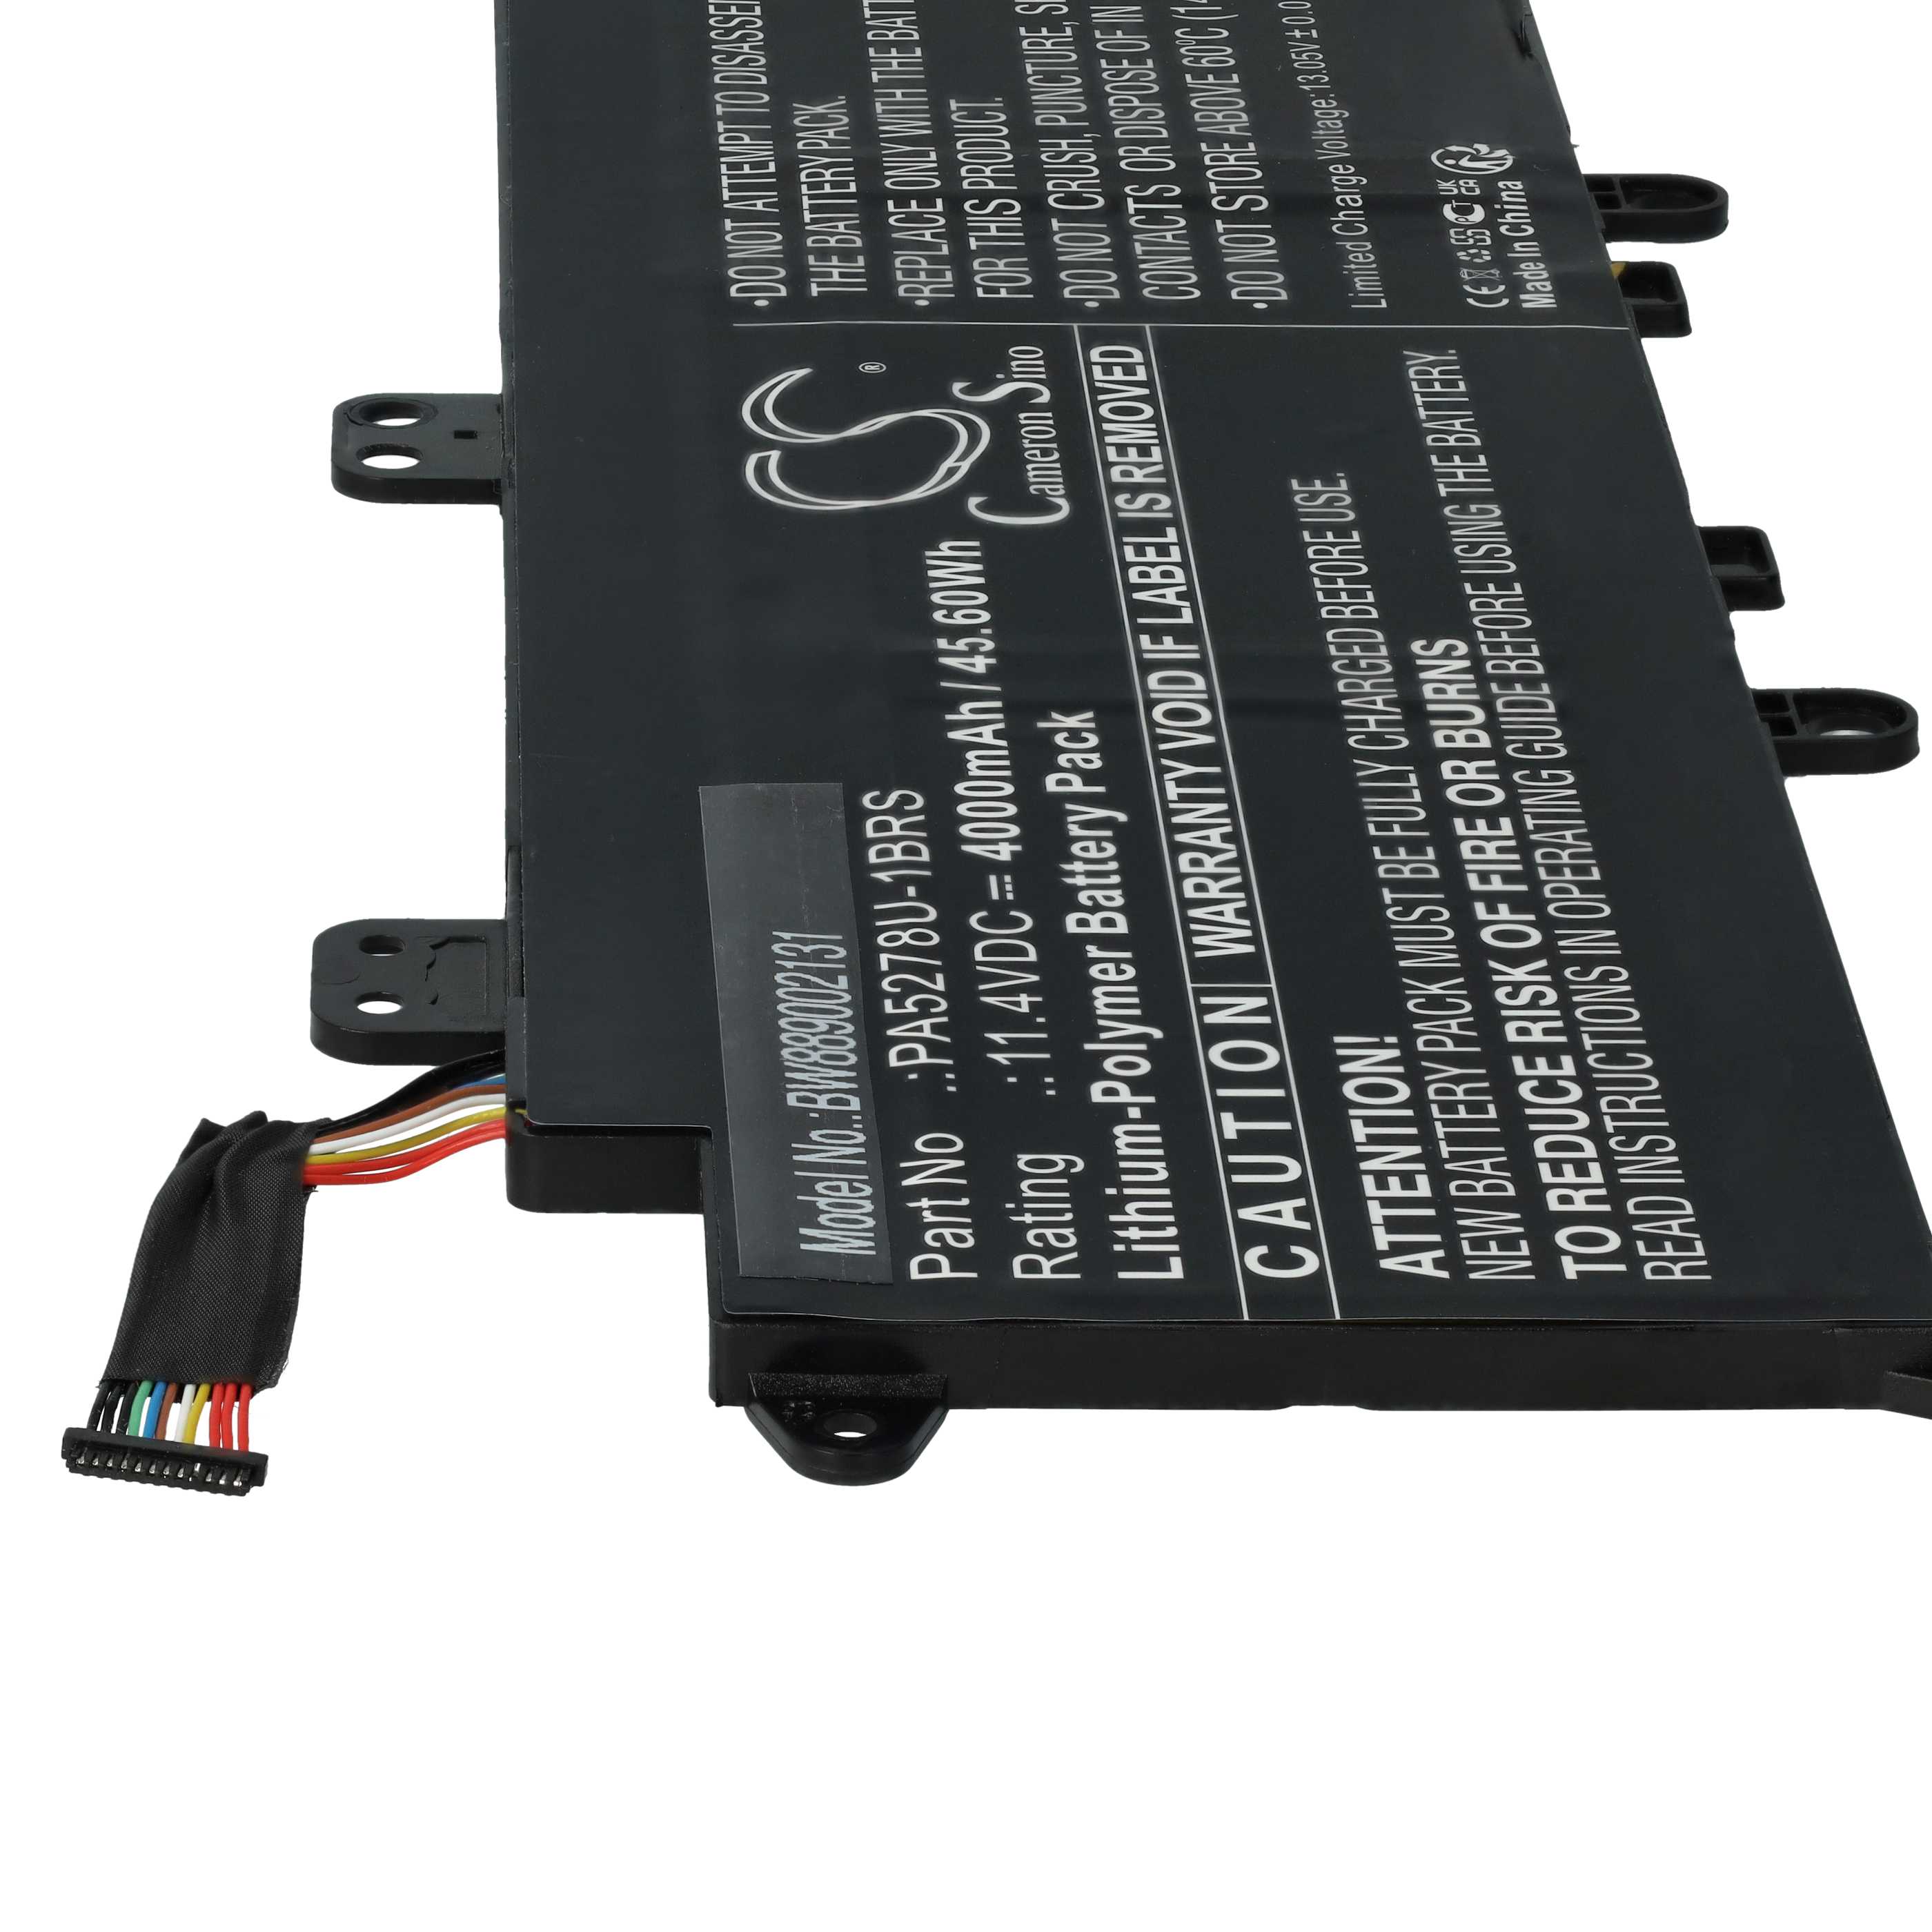 Batterie remplace Toshiba PA5278U-1BRS pour ordinateur portable - 4000mAh 11,4V Li-polymère, noir